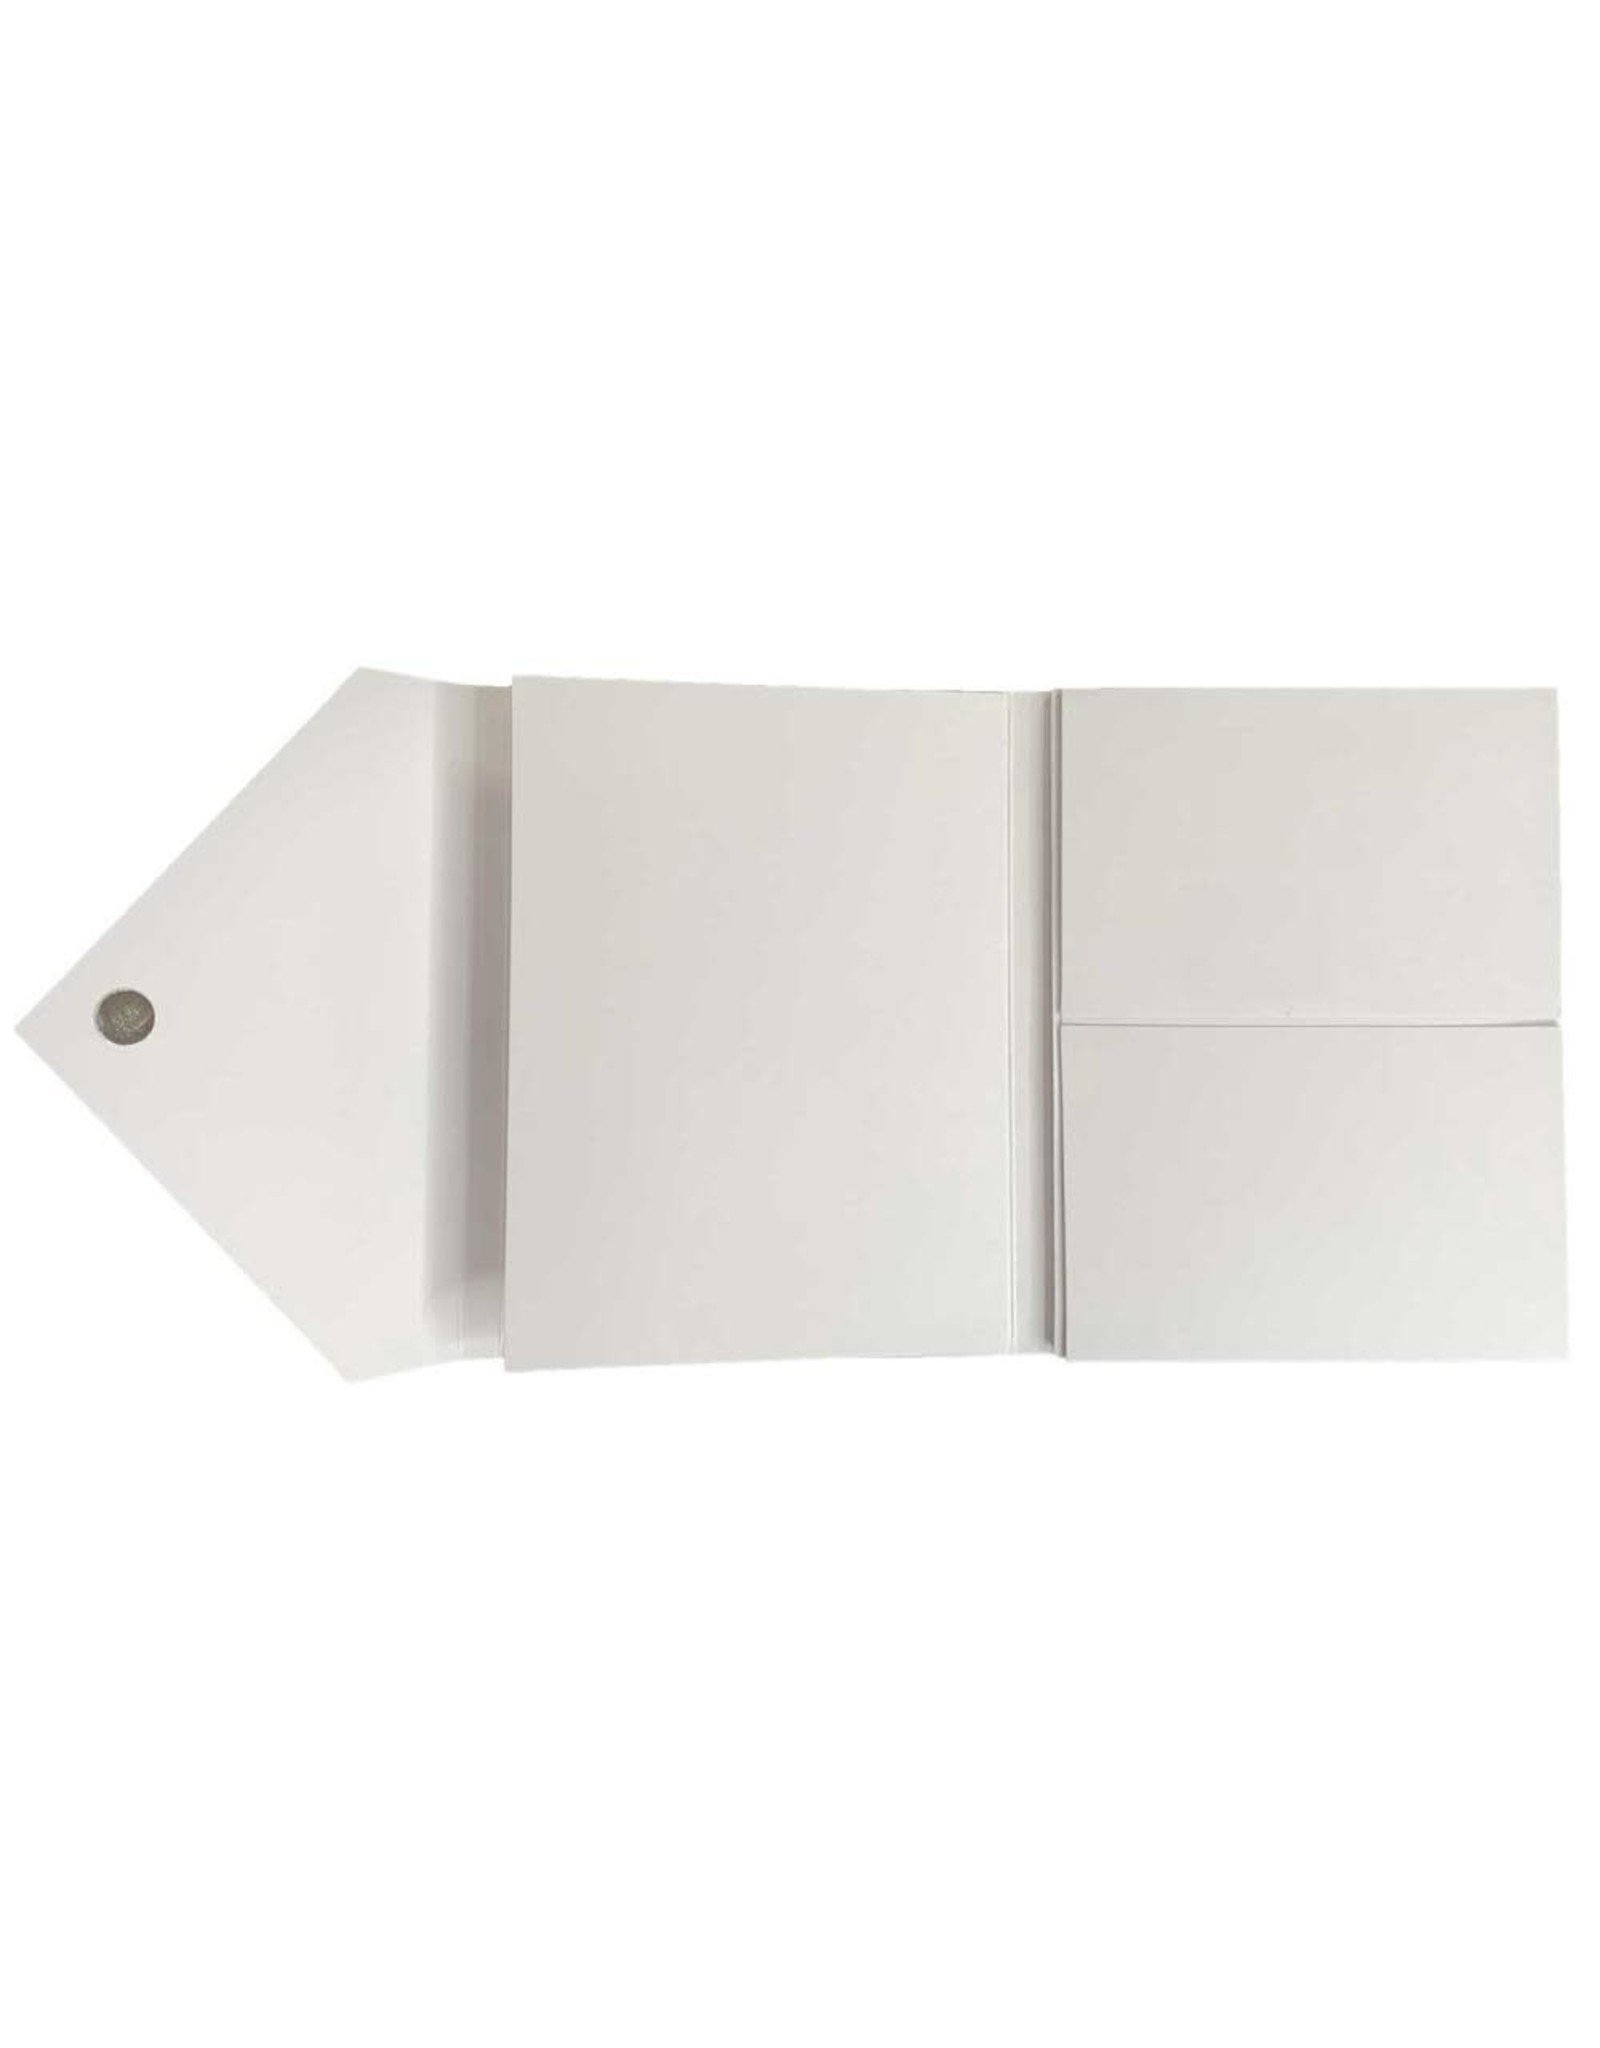 49 AND MARKET Foundations Envelope Gatefold Flip Folio - WHITE